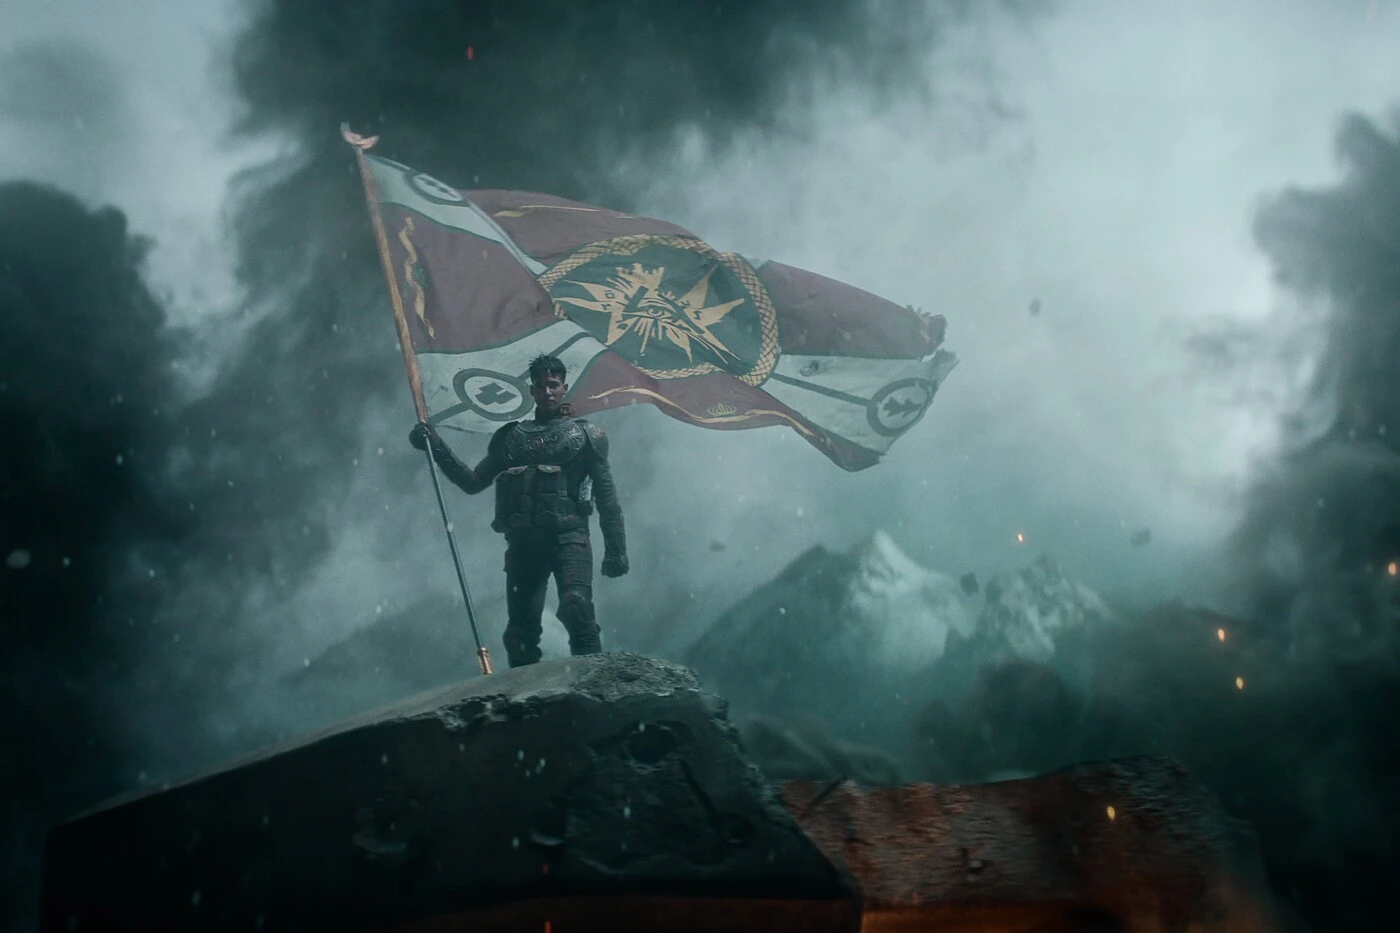 ein junger Mann in Rüstung steht auf der Spitze eines Felsens, er hält eine riesige Fahne in der Hand, auf der verschiedene Symbole abgebildet sind, im Hintergrund sind schneebedeckte Berge zu sehen, dunkler Rauch steigt um den Mann herum auf